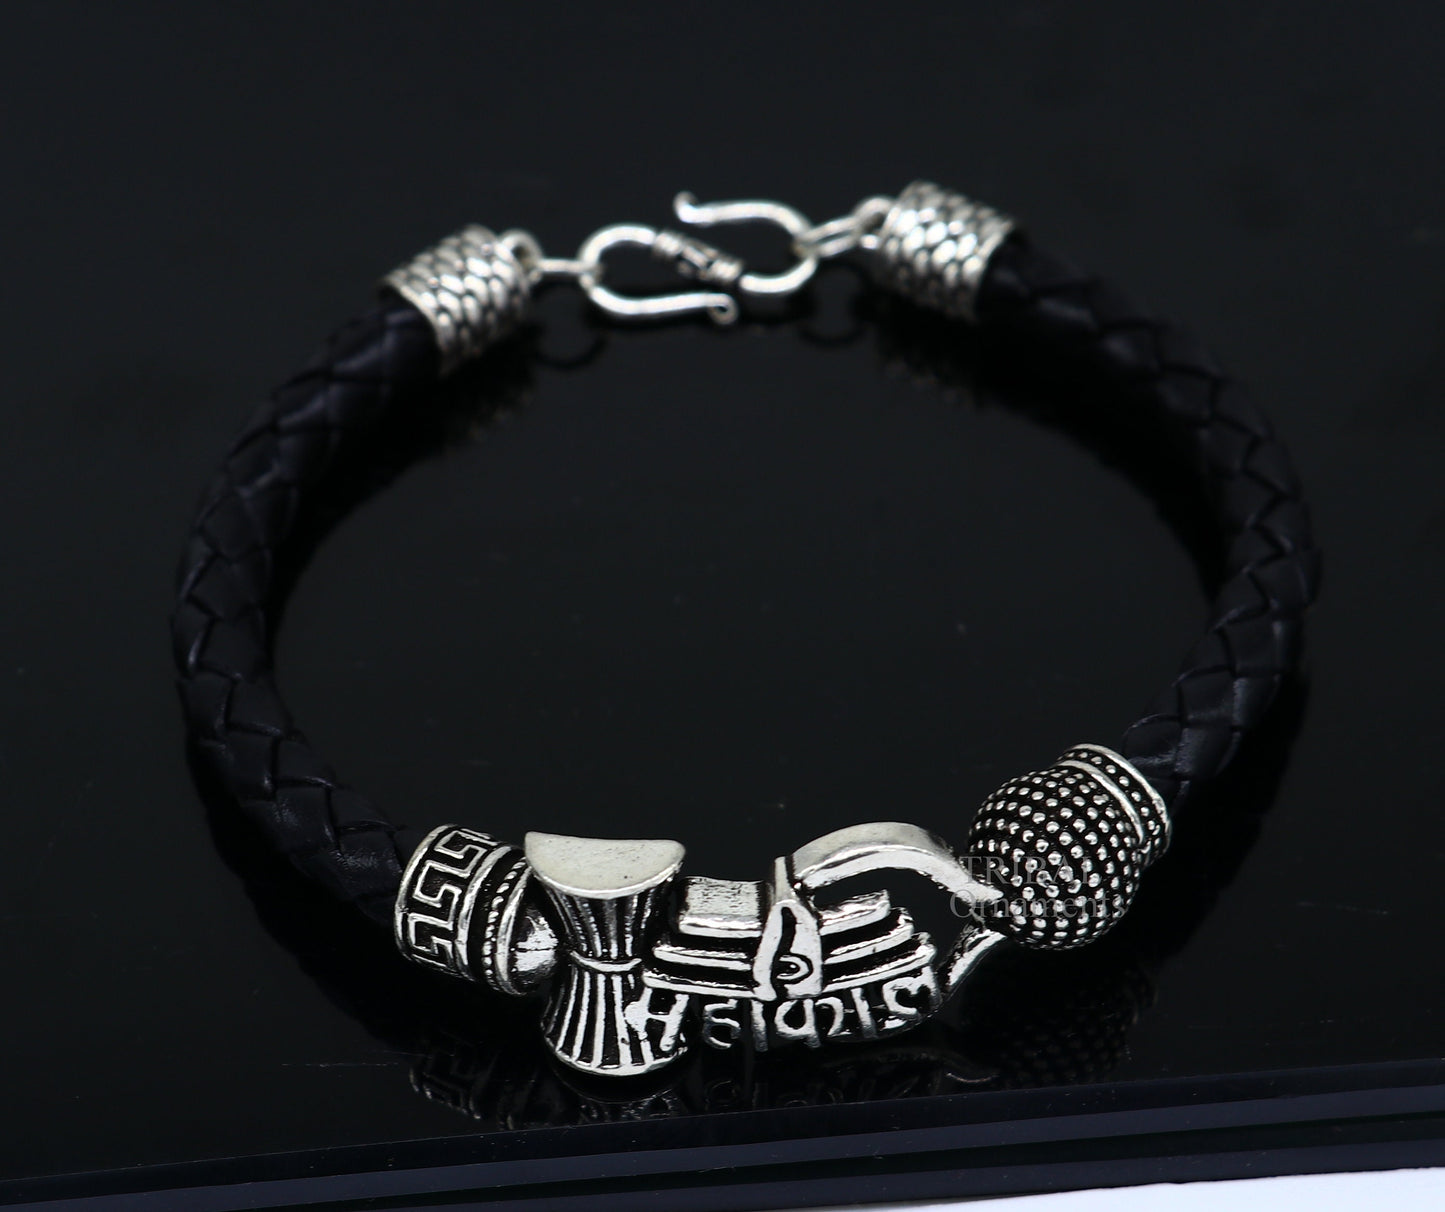 9" long 925 sterling silver customized design lord Shiva Mahakal bracelet, leather belt trident shiva bracelet best gift for him Rnsbr584 - TRIBAL ORNAMENTS